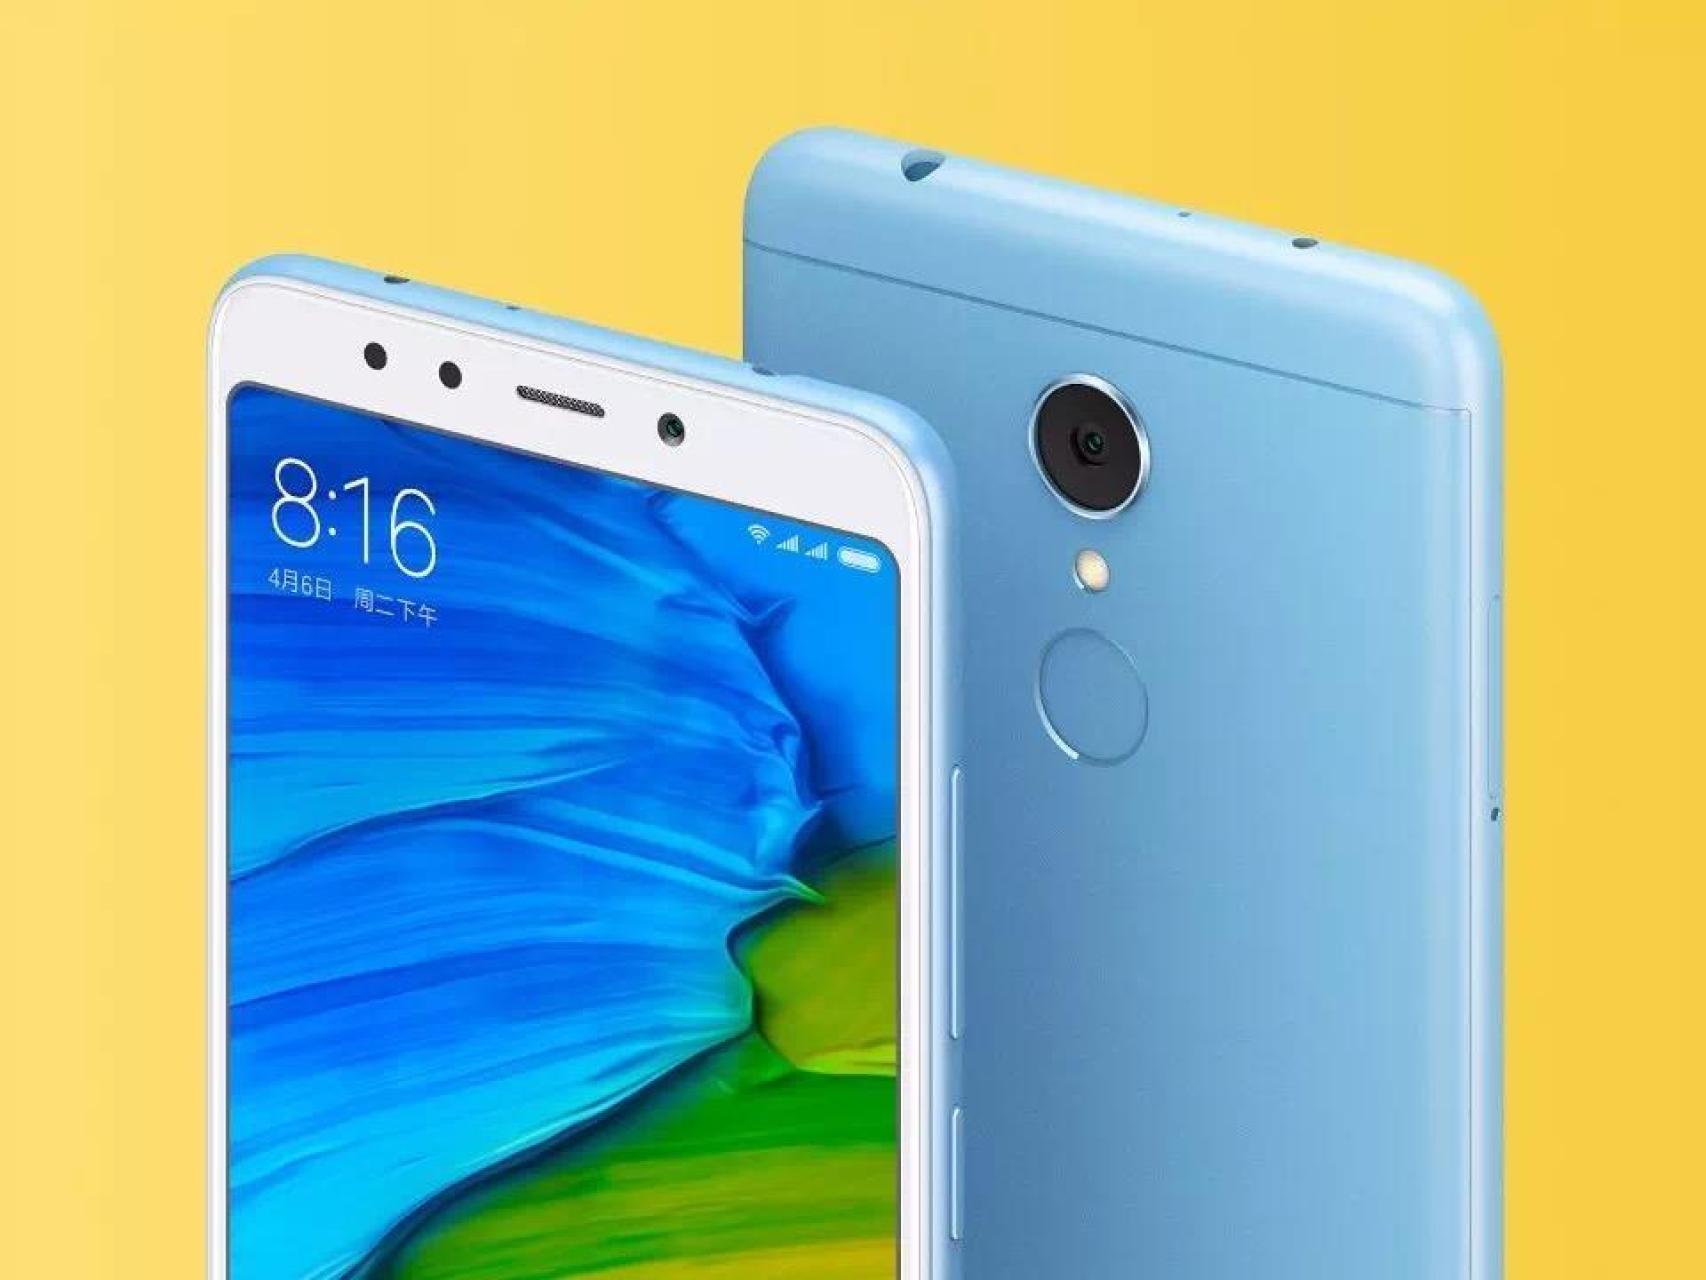 Oferta Flash del día para este Redmi: el móvil más popular de Xiaomi por  130 euros menos